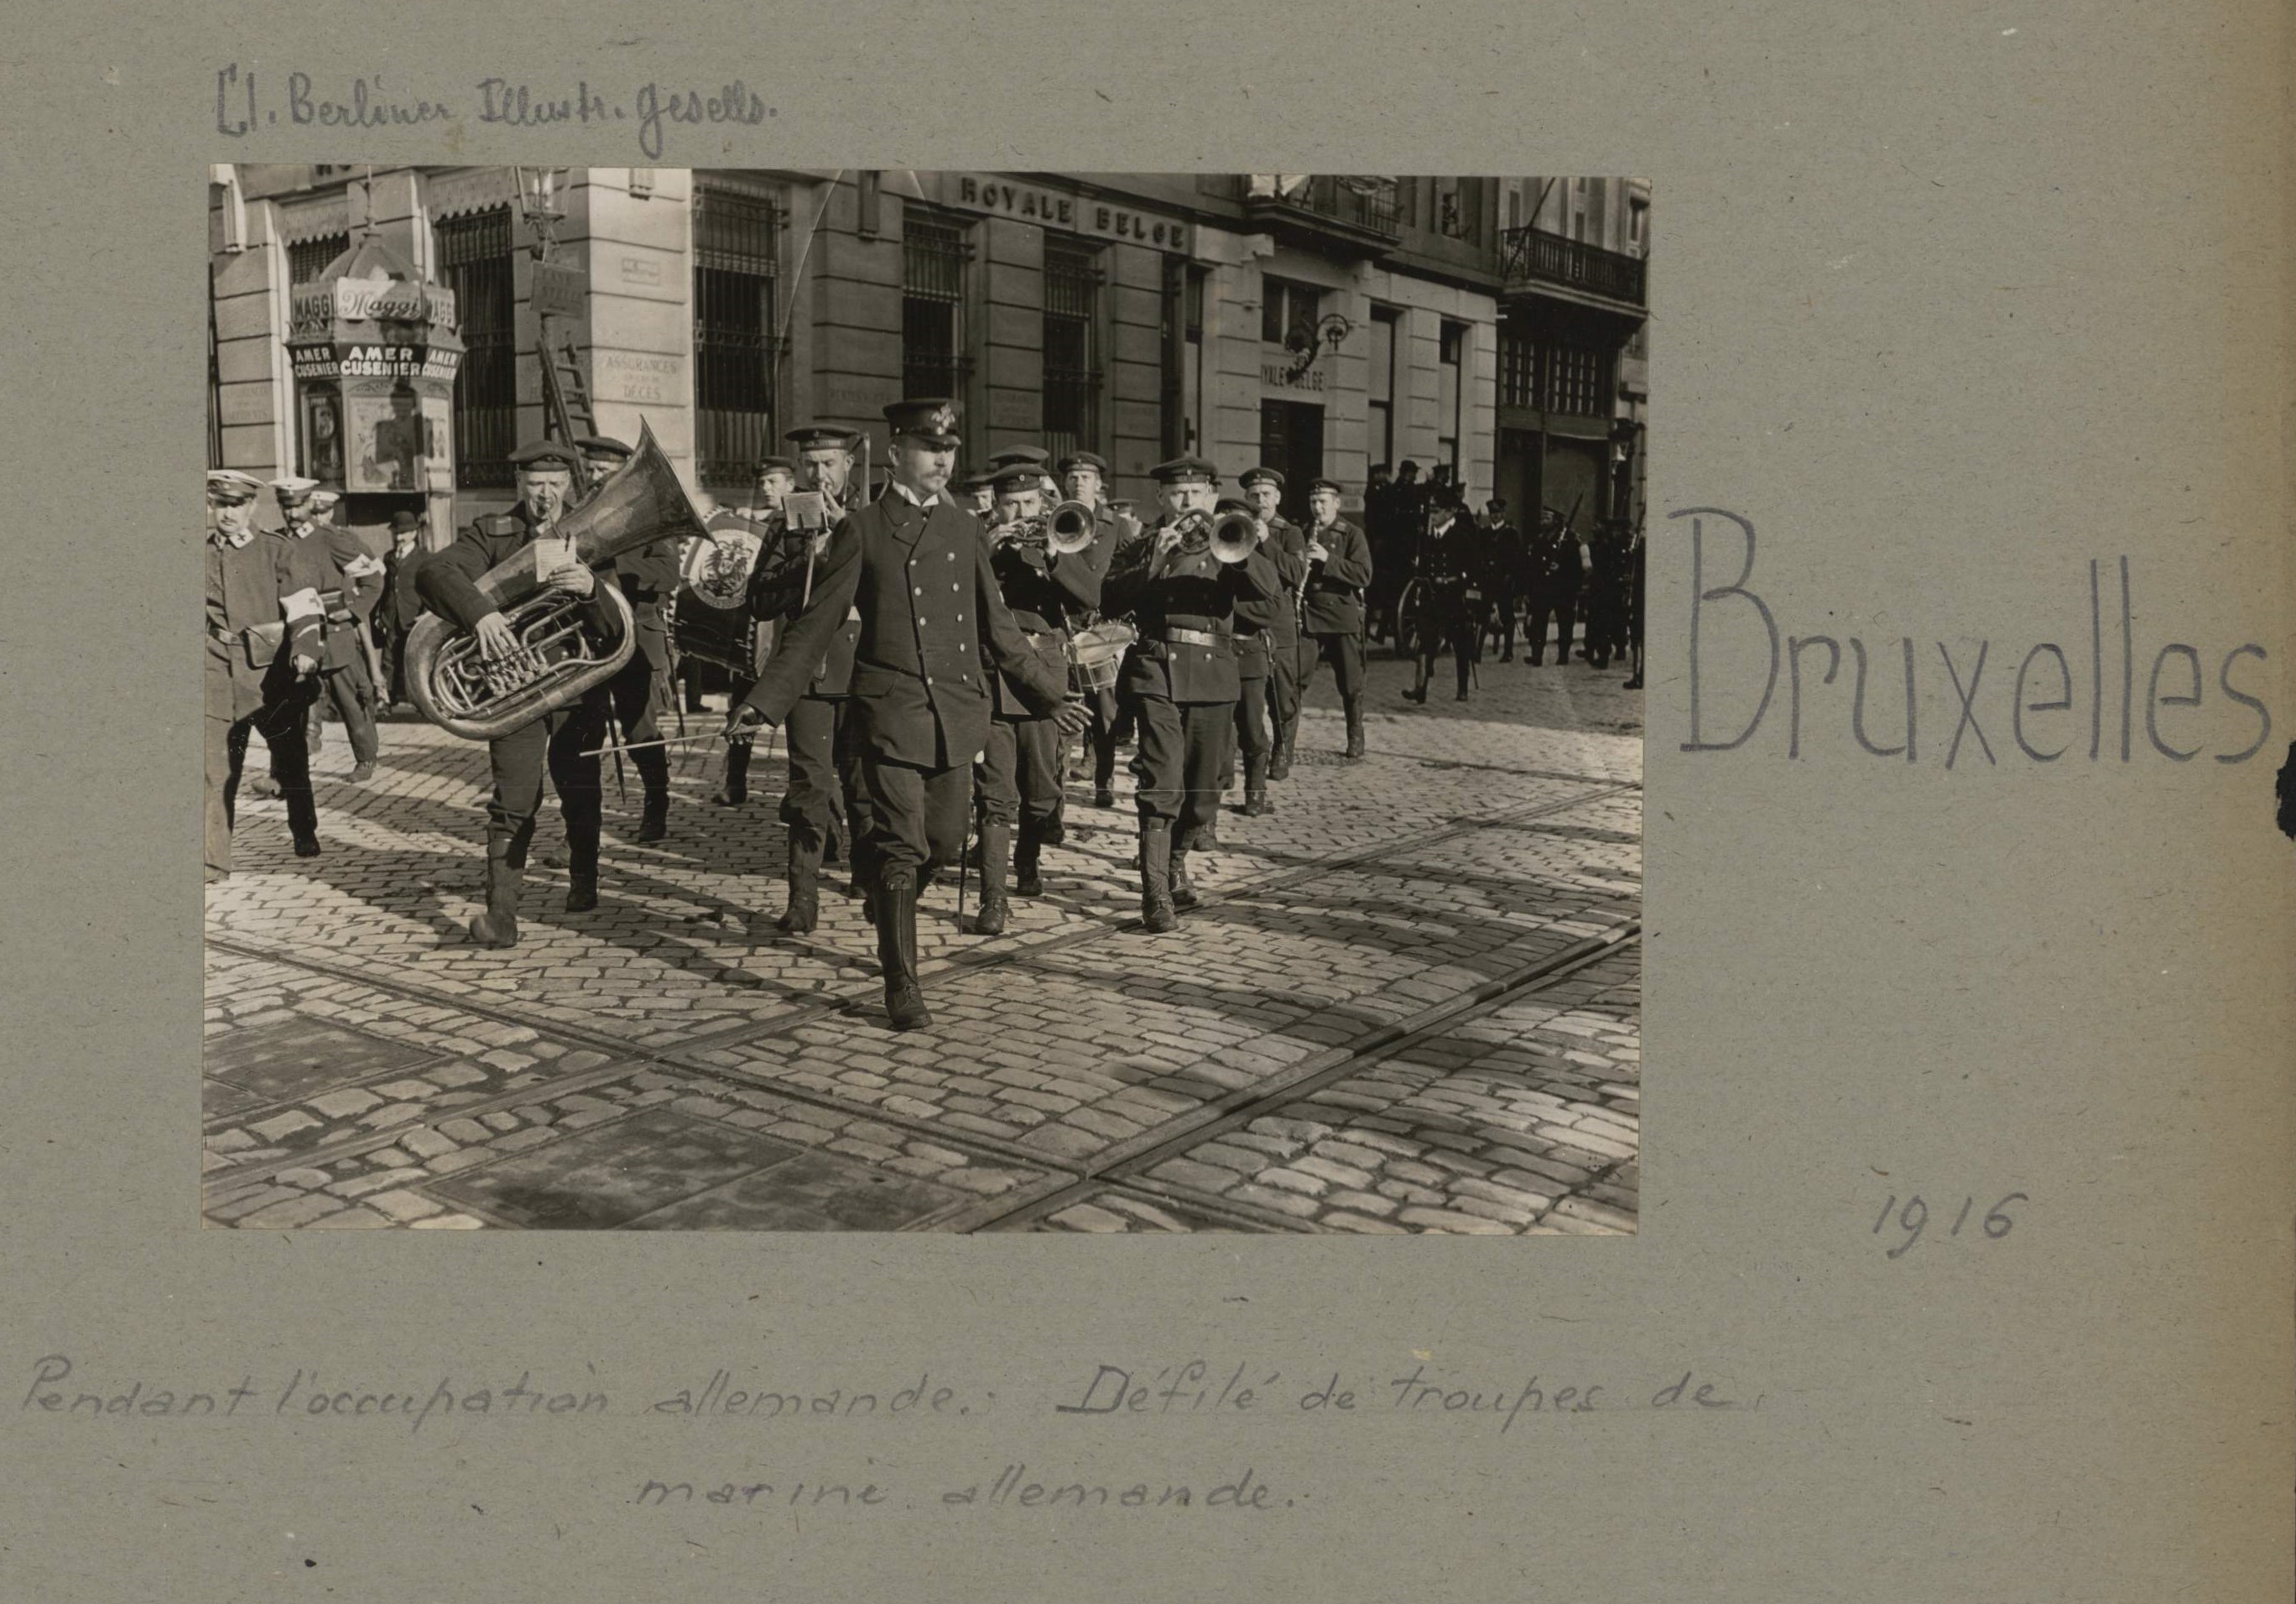 Ansichtsbeispiel für eine Fototafel aus dem digitalen Bestand "Albums Valois": Umzug deutscher Marinesoldaten mit Musikkorps in Brüssel 1916